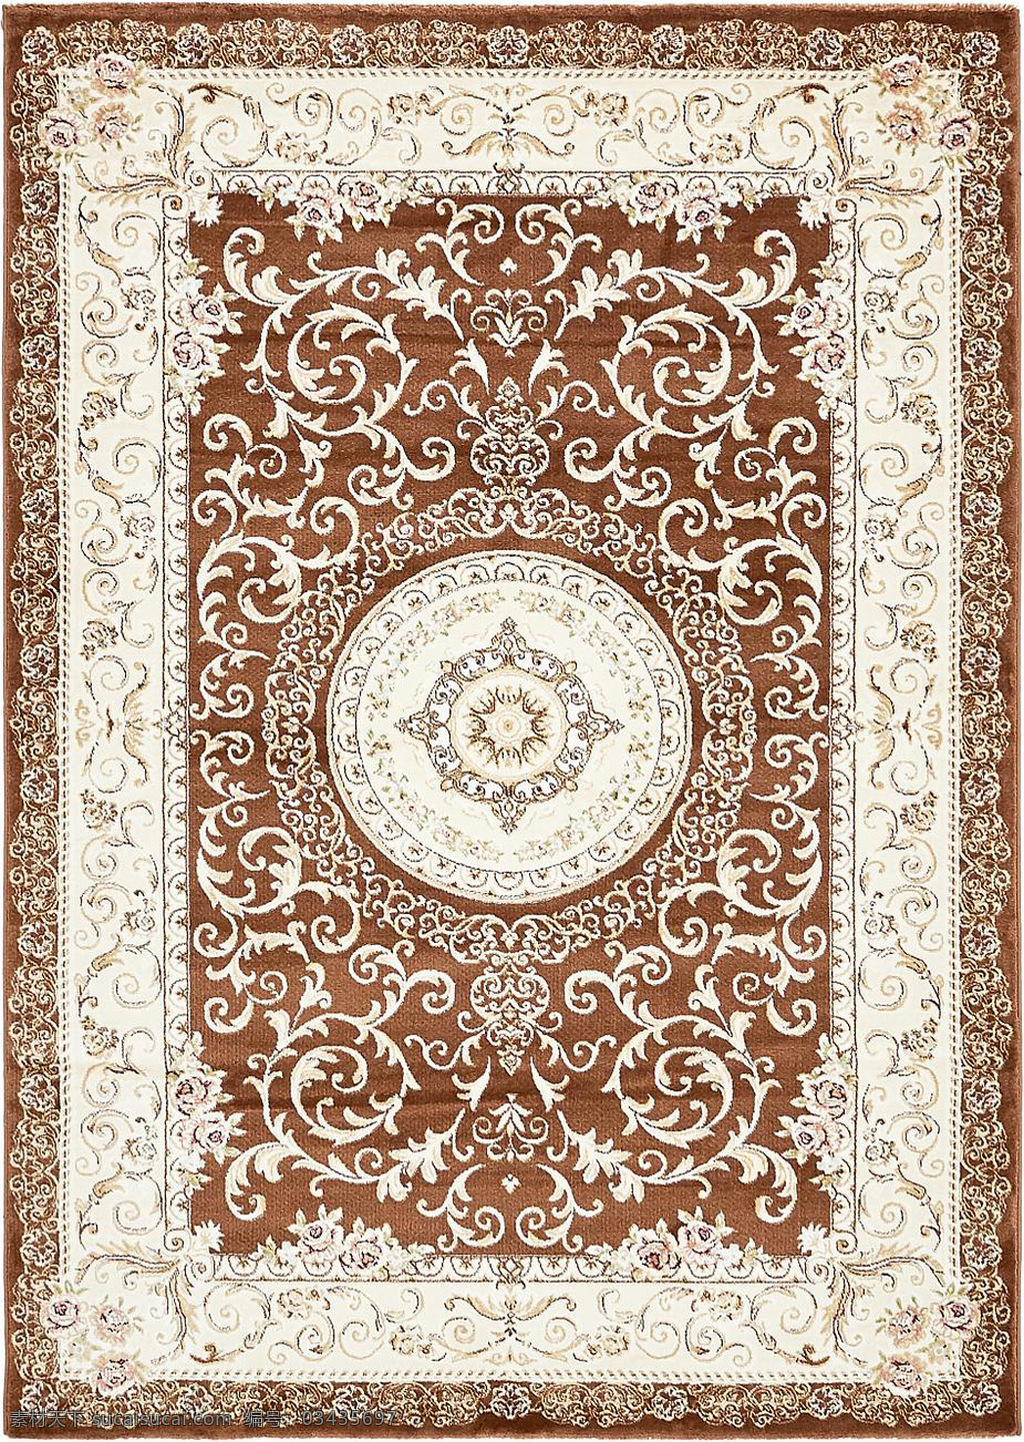 古典 经典 地毯 花边 环境设计 花纹 毛毯 布料 坐垫 矩形 图纹